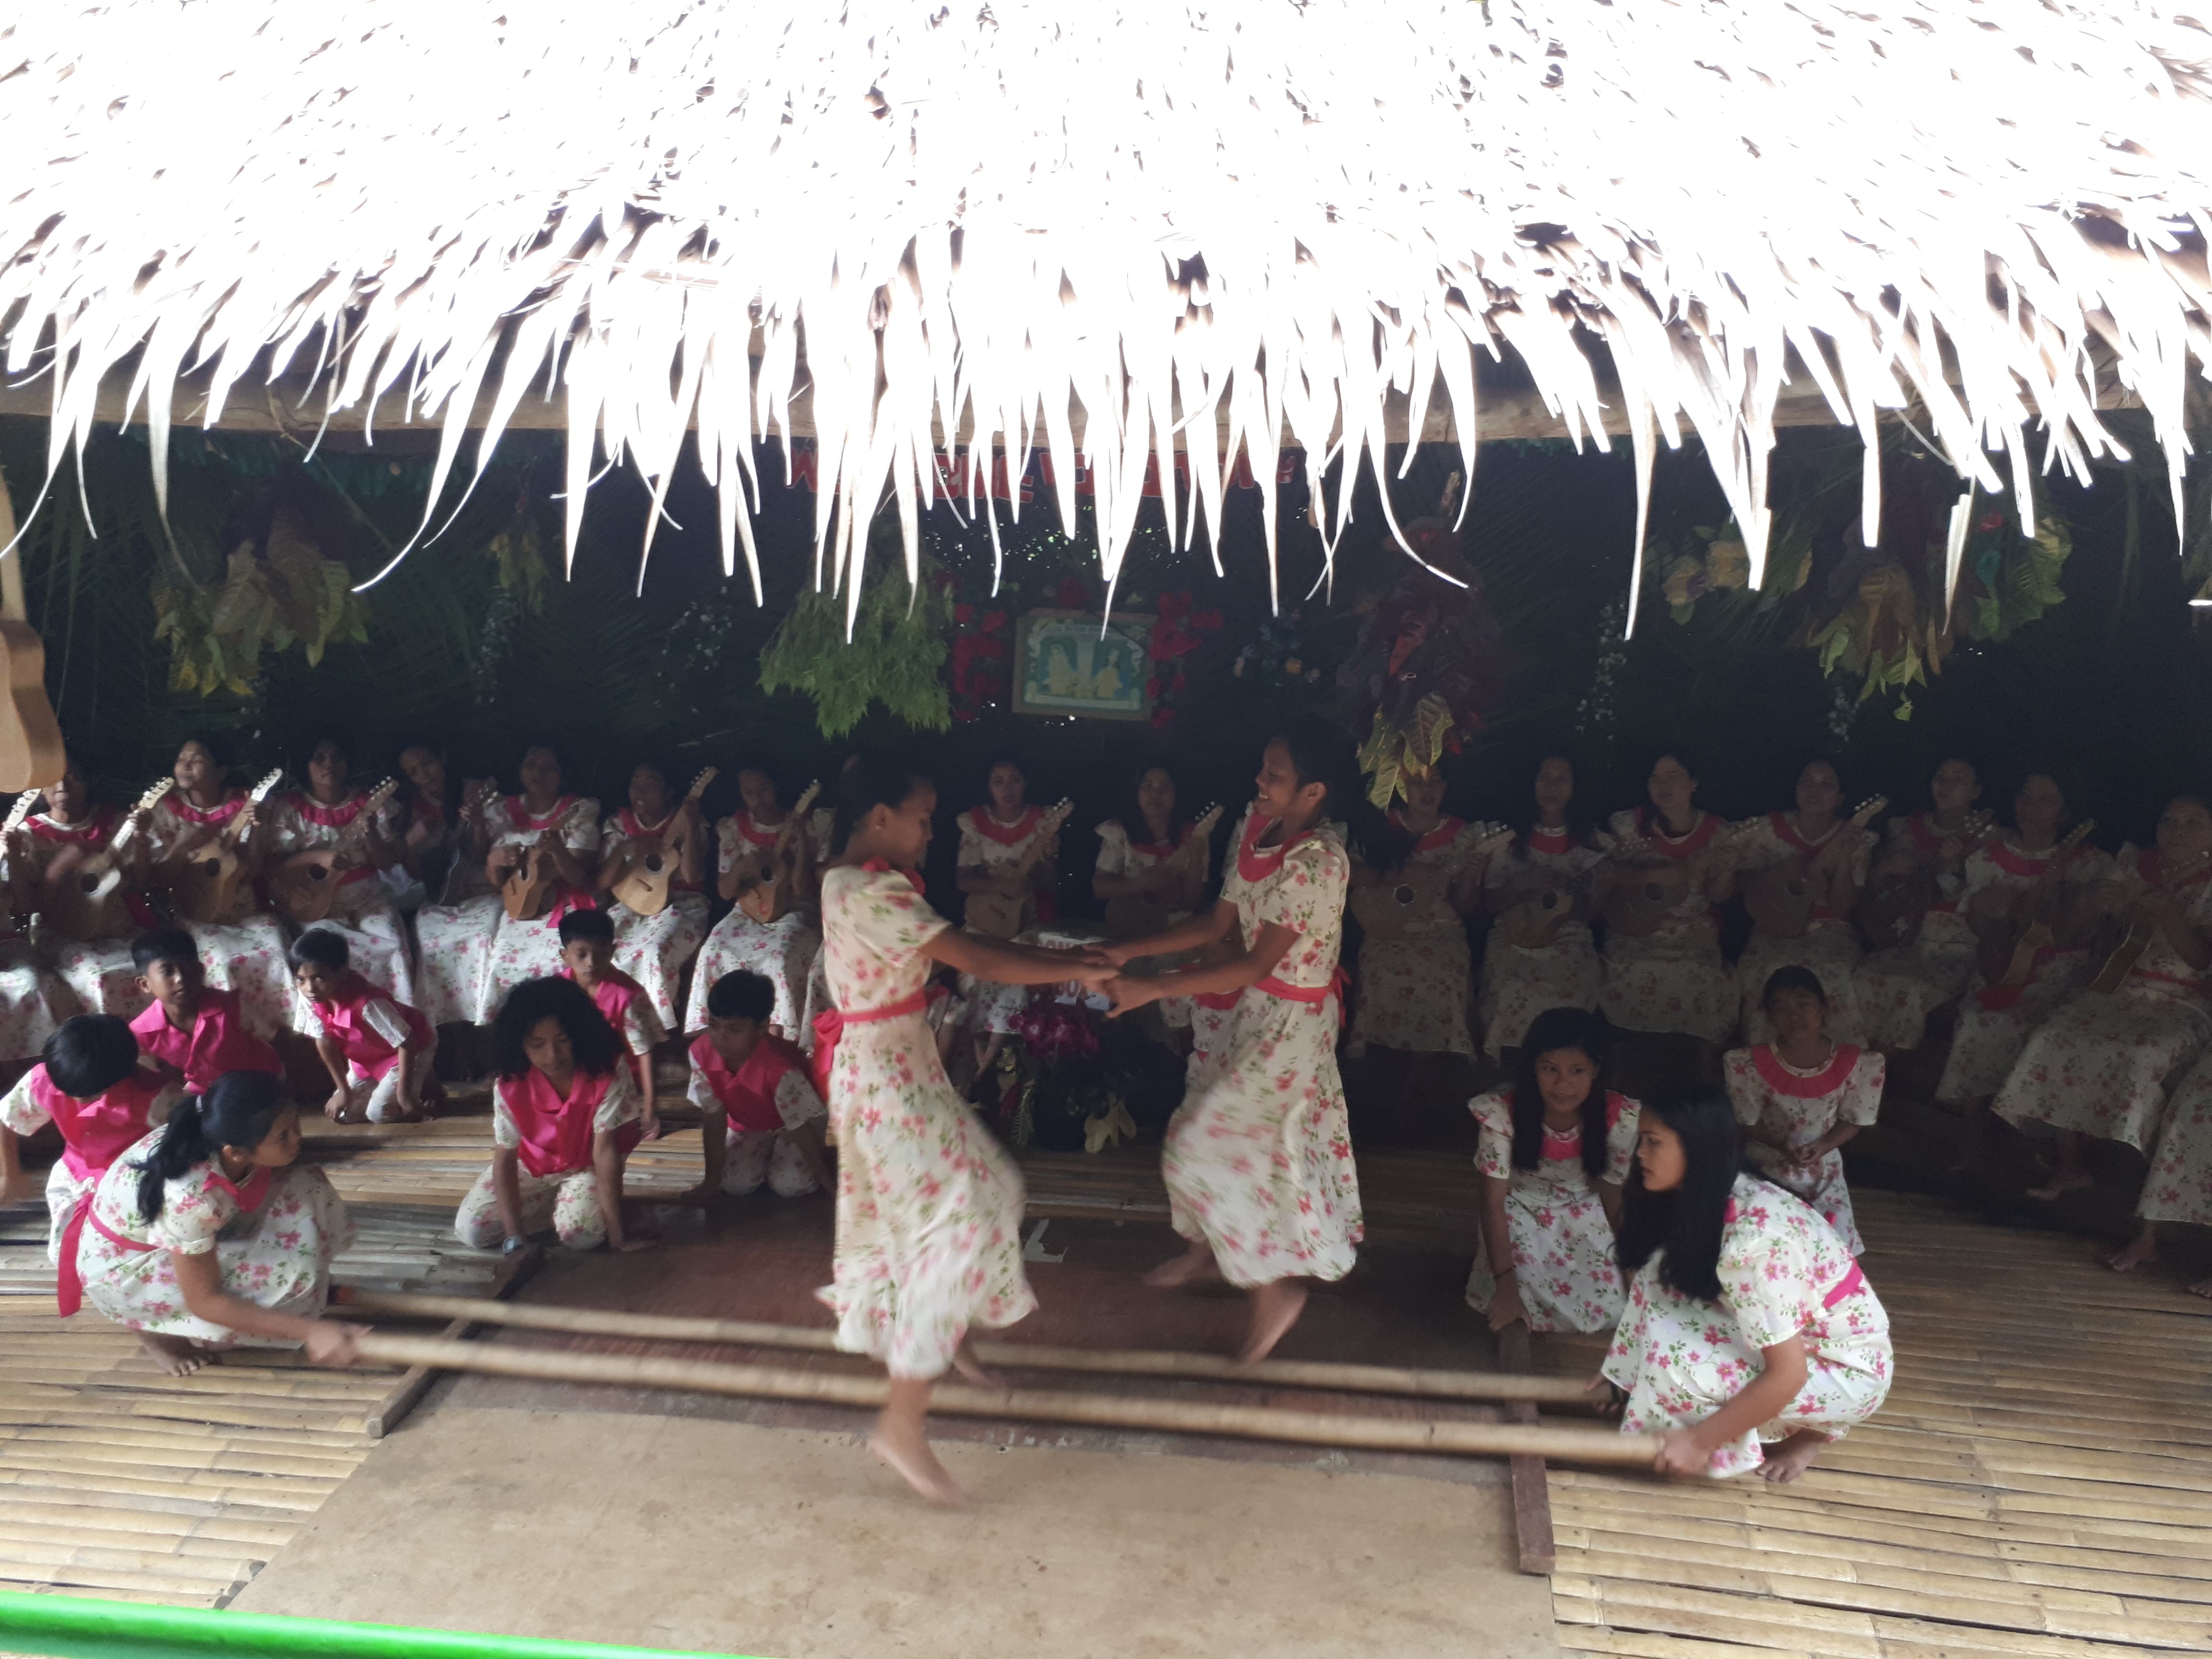 Danse traditionnelle aux abords de la rivière Loboc aux Philippines